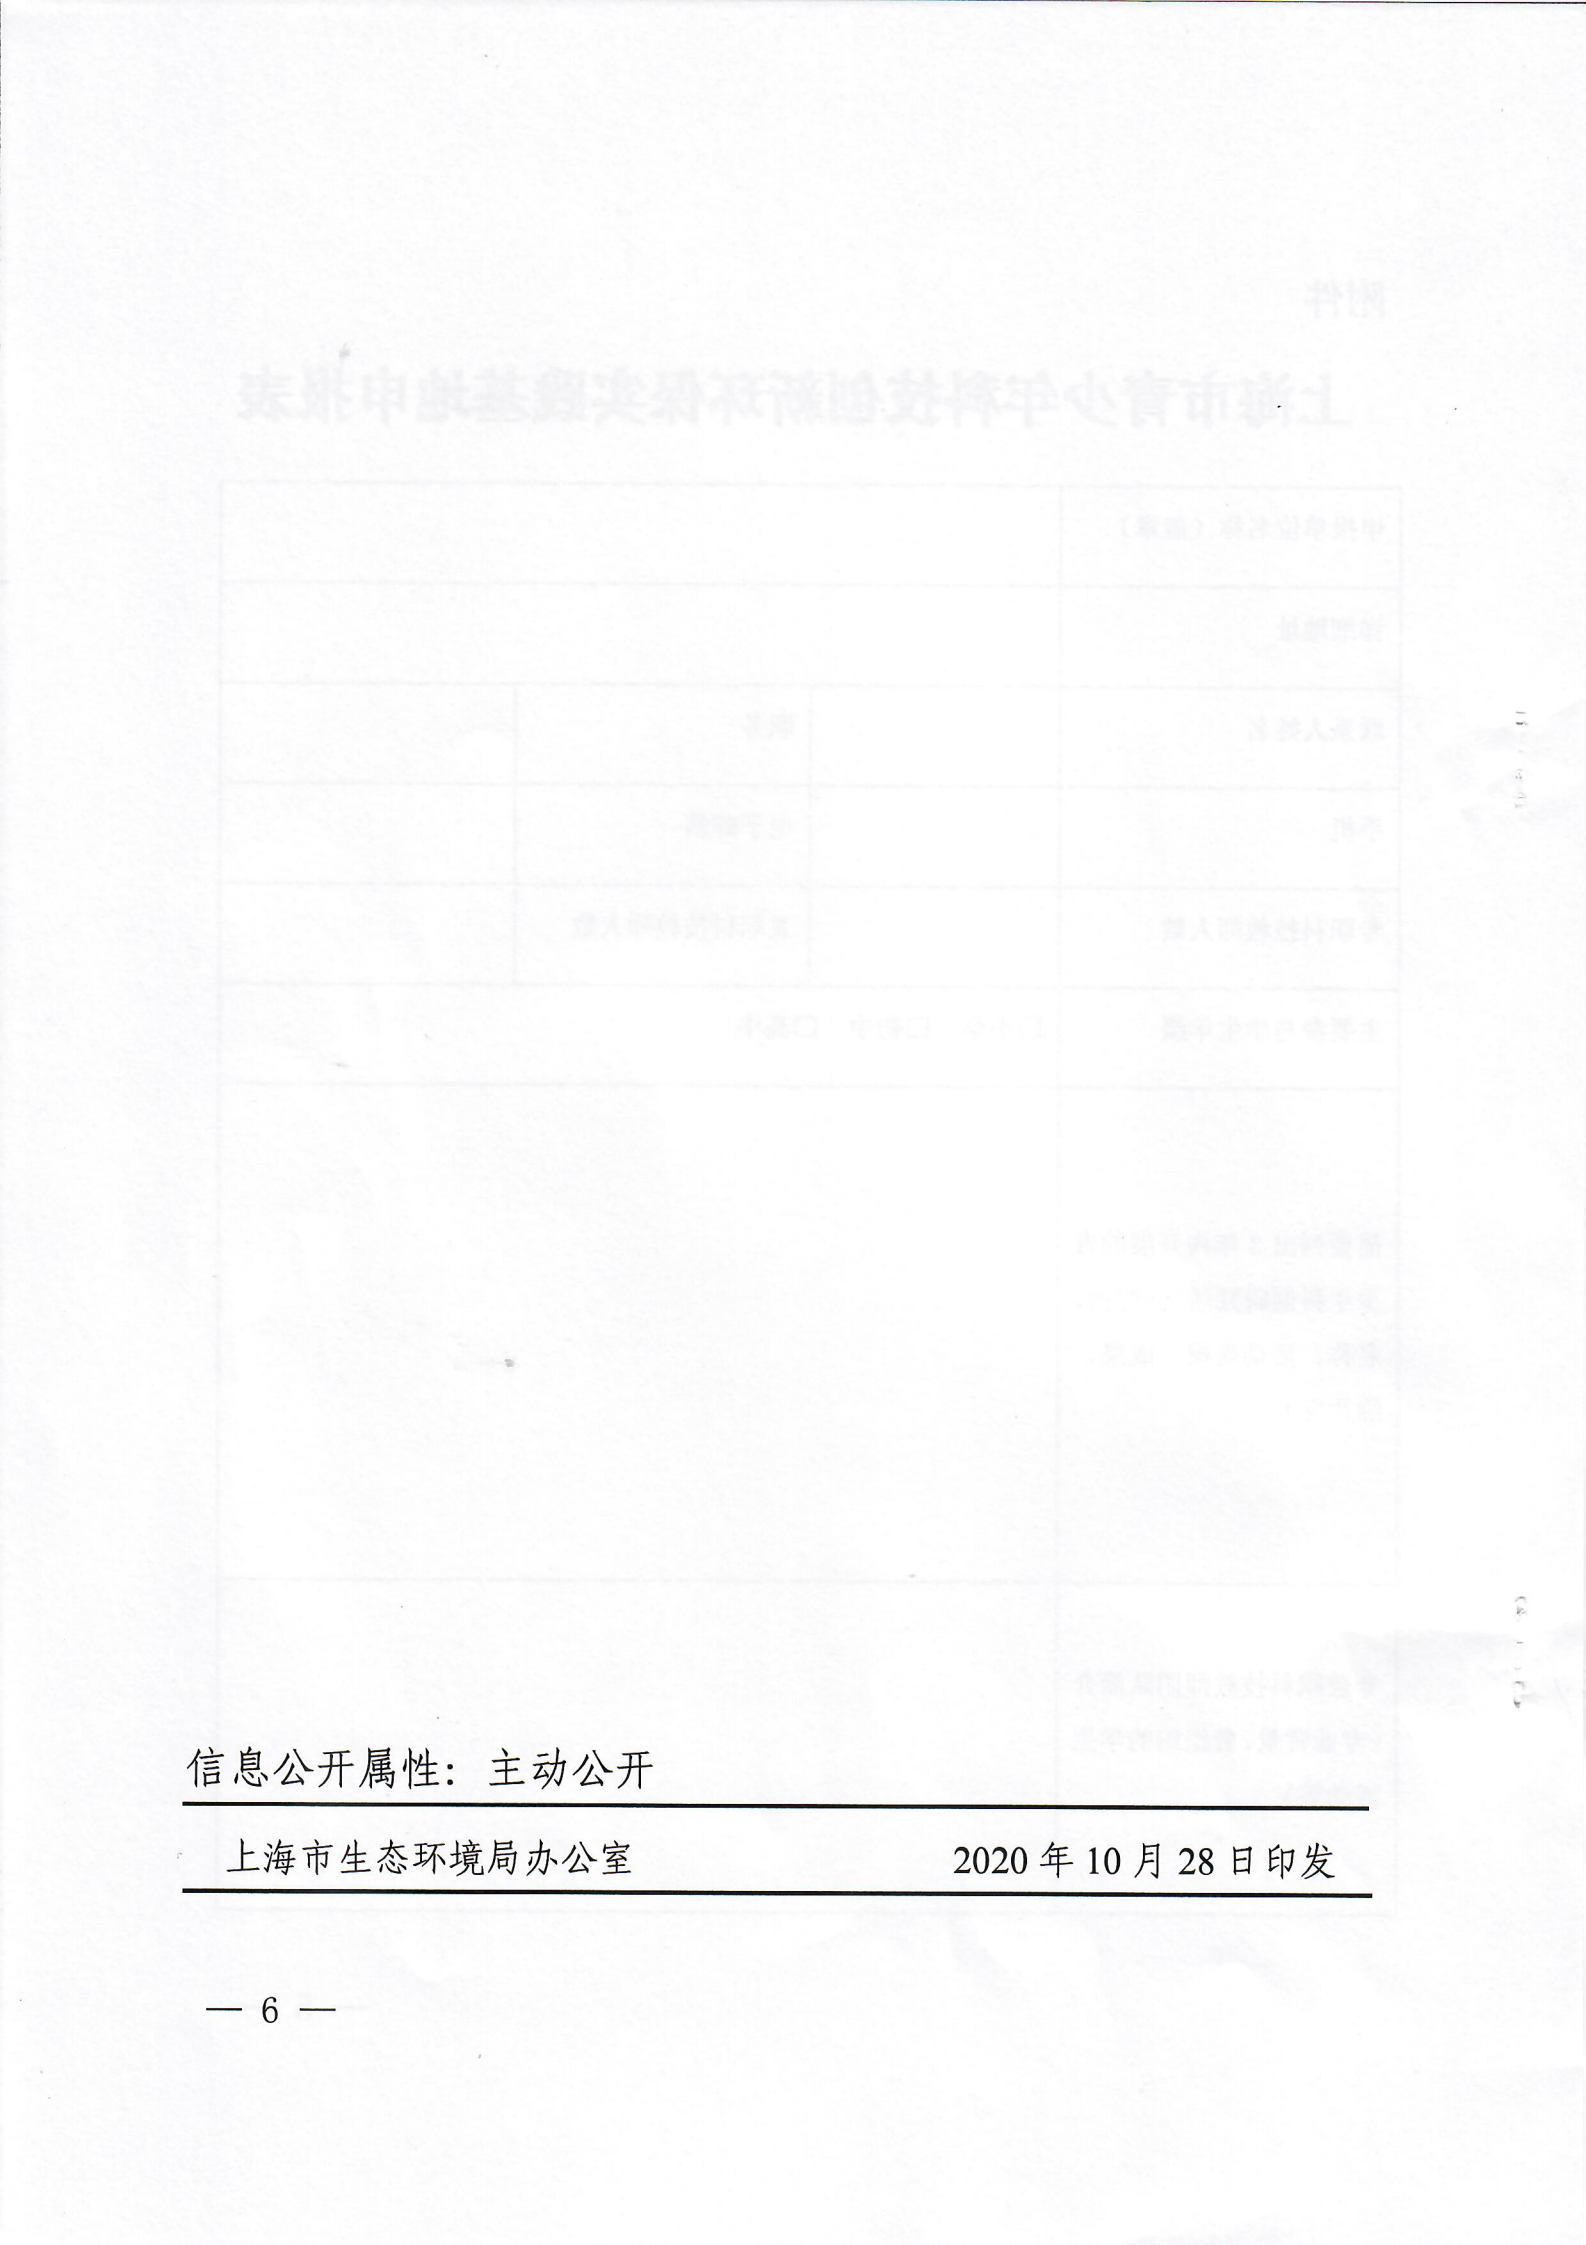 关于申报上海市青少年科技创新环保实践基地的通知扫描版_05.png